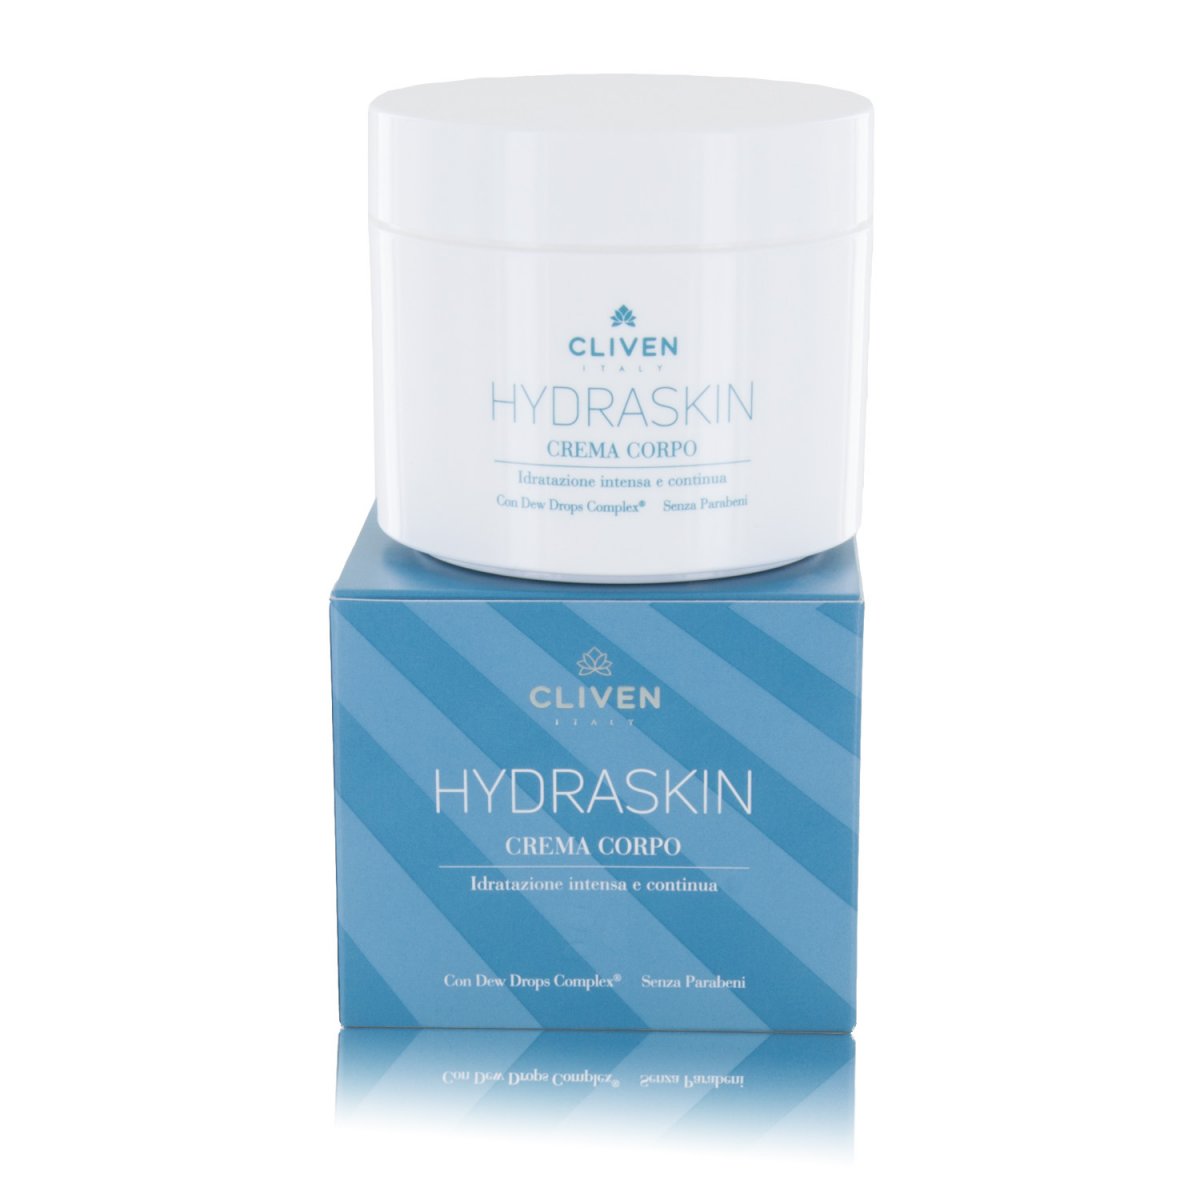 Natura Hydraskin Crema Corpo Super-Idratante con Dew Drops Complex® per una idratazione intensa e continua, 300ml